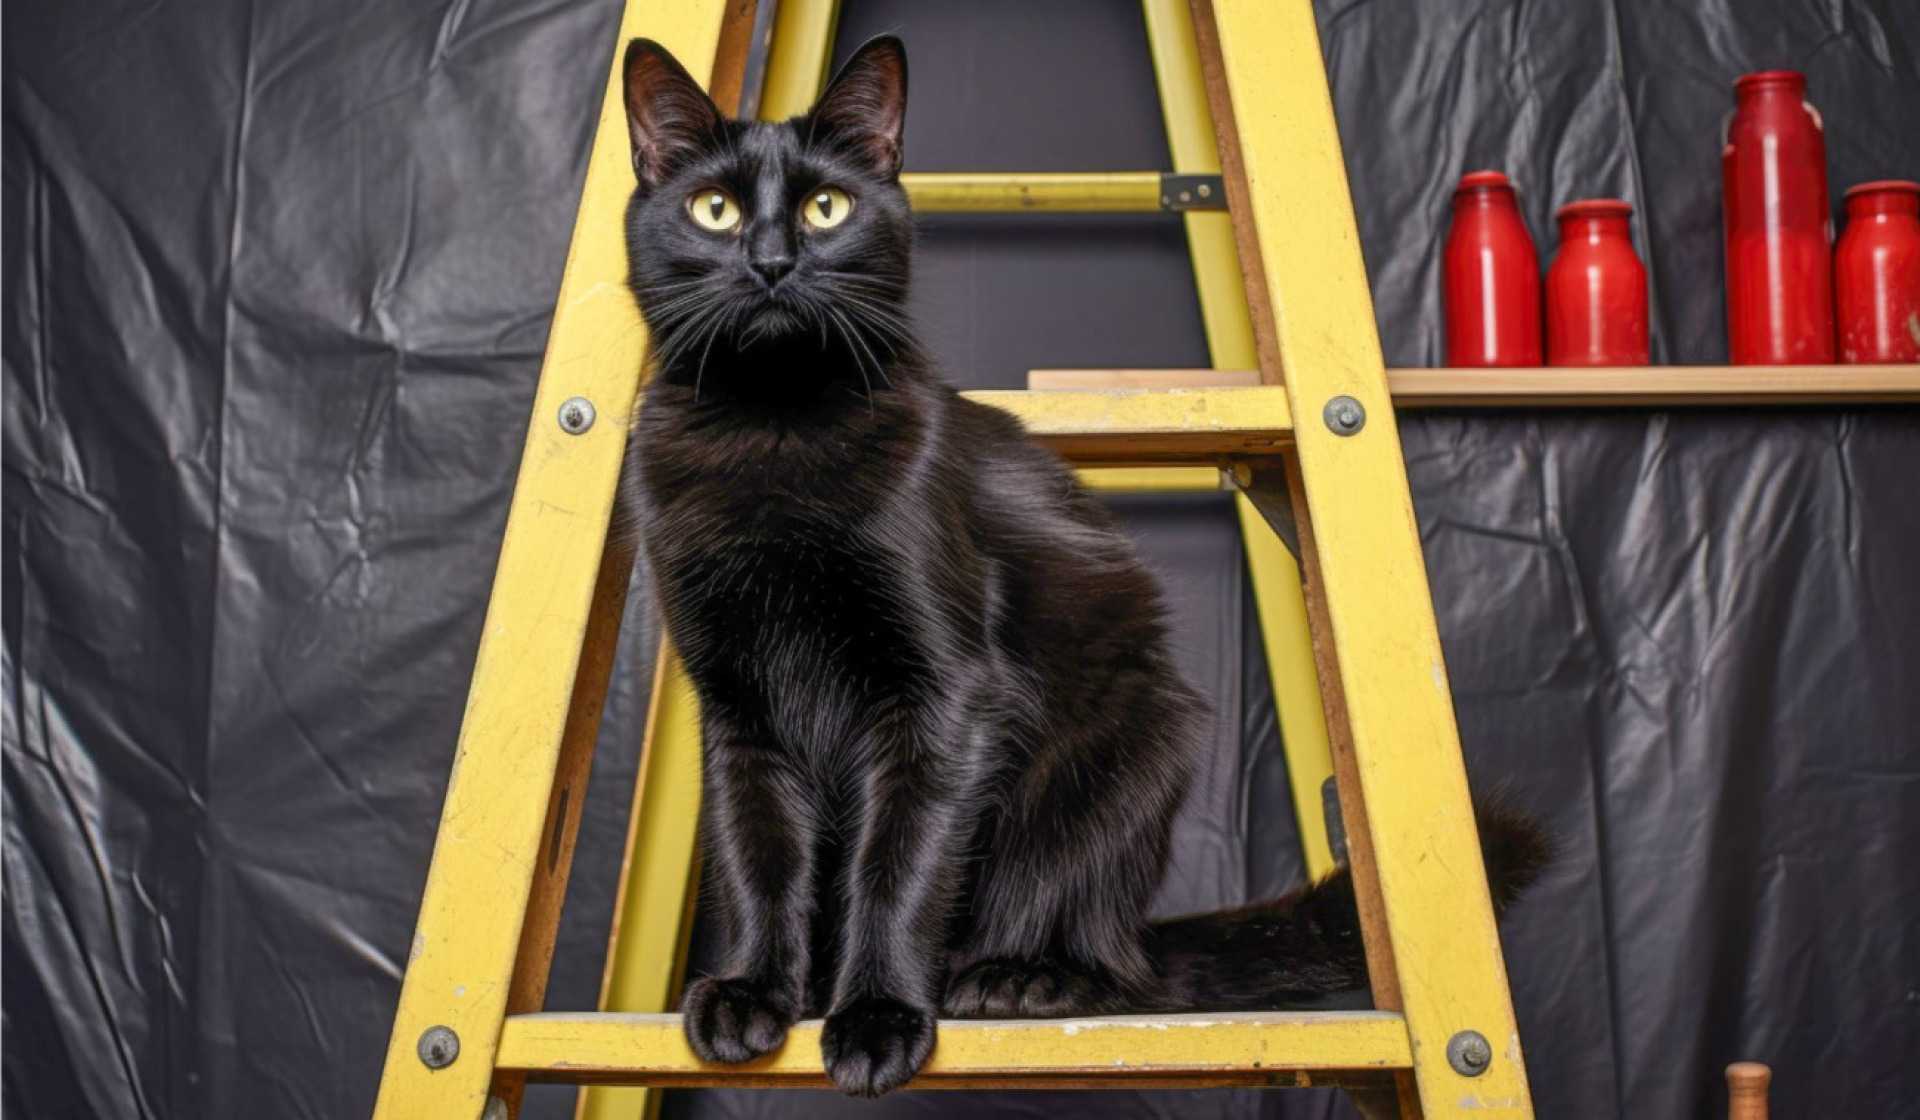 Eine schwarze Katze unter einer Leiter – am heutigen Tag ist angeblich Vorsicht geboten. BILD: ALTITUDEVISUAL / STOCK.ADOBE.COM